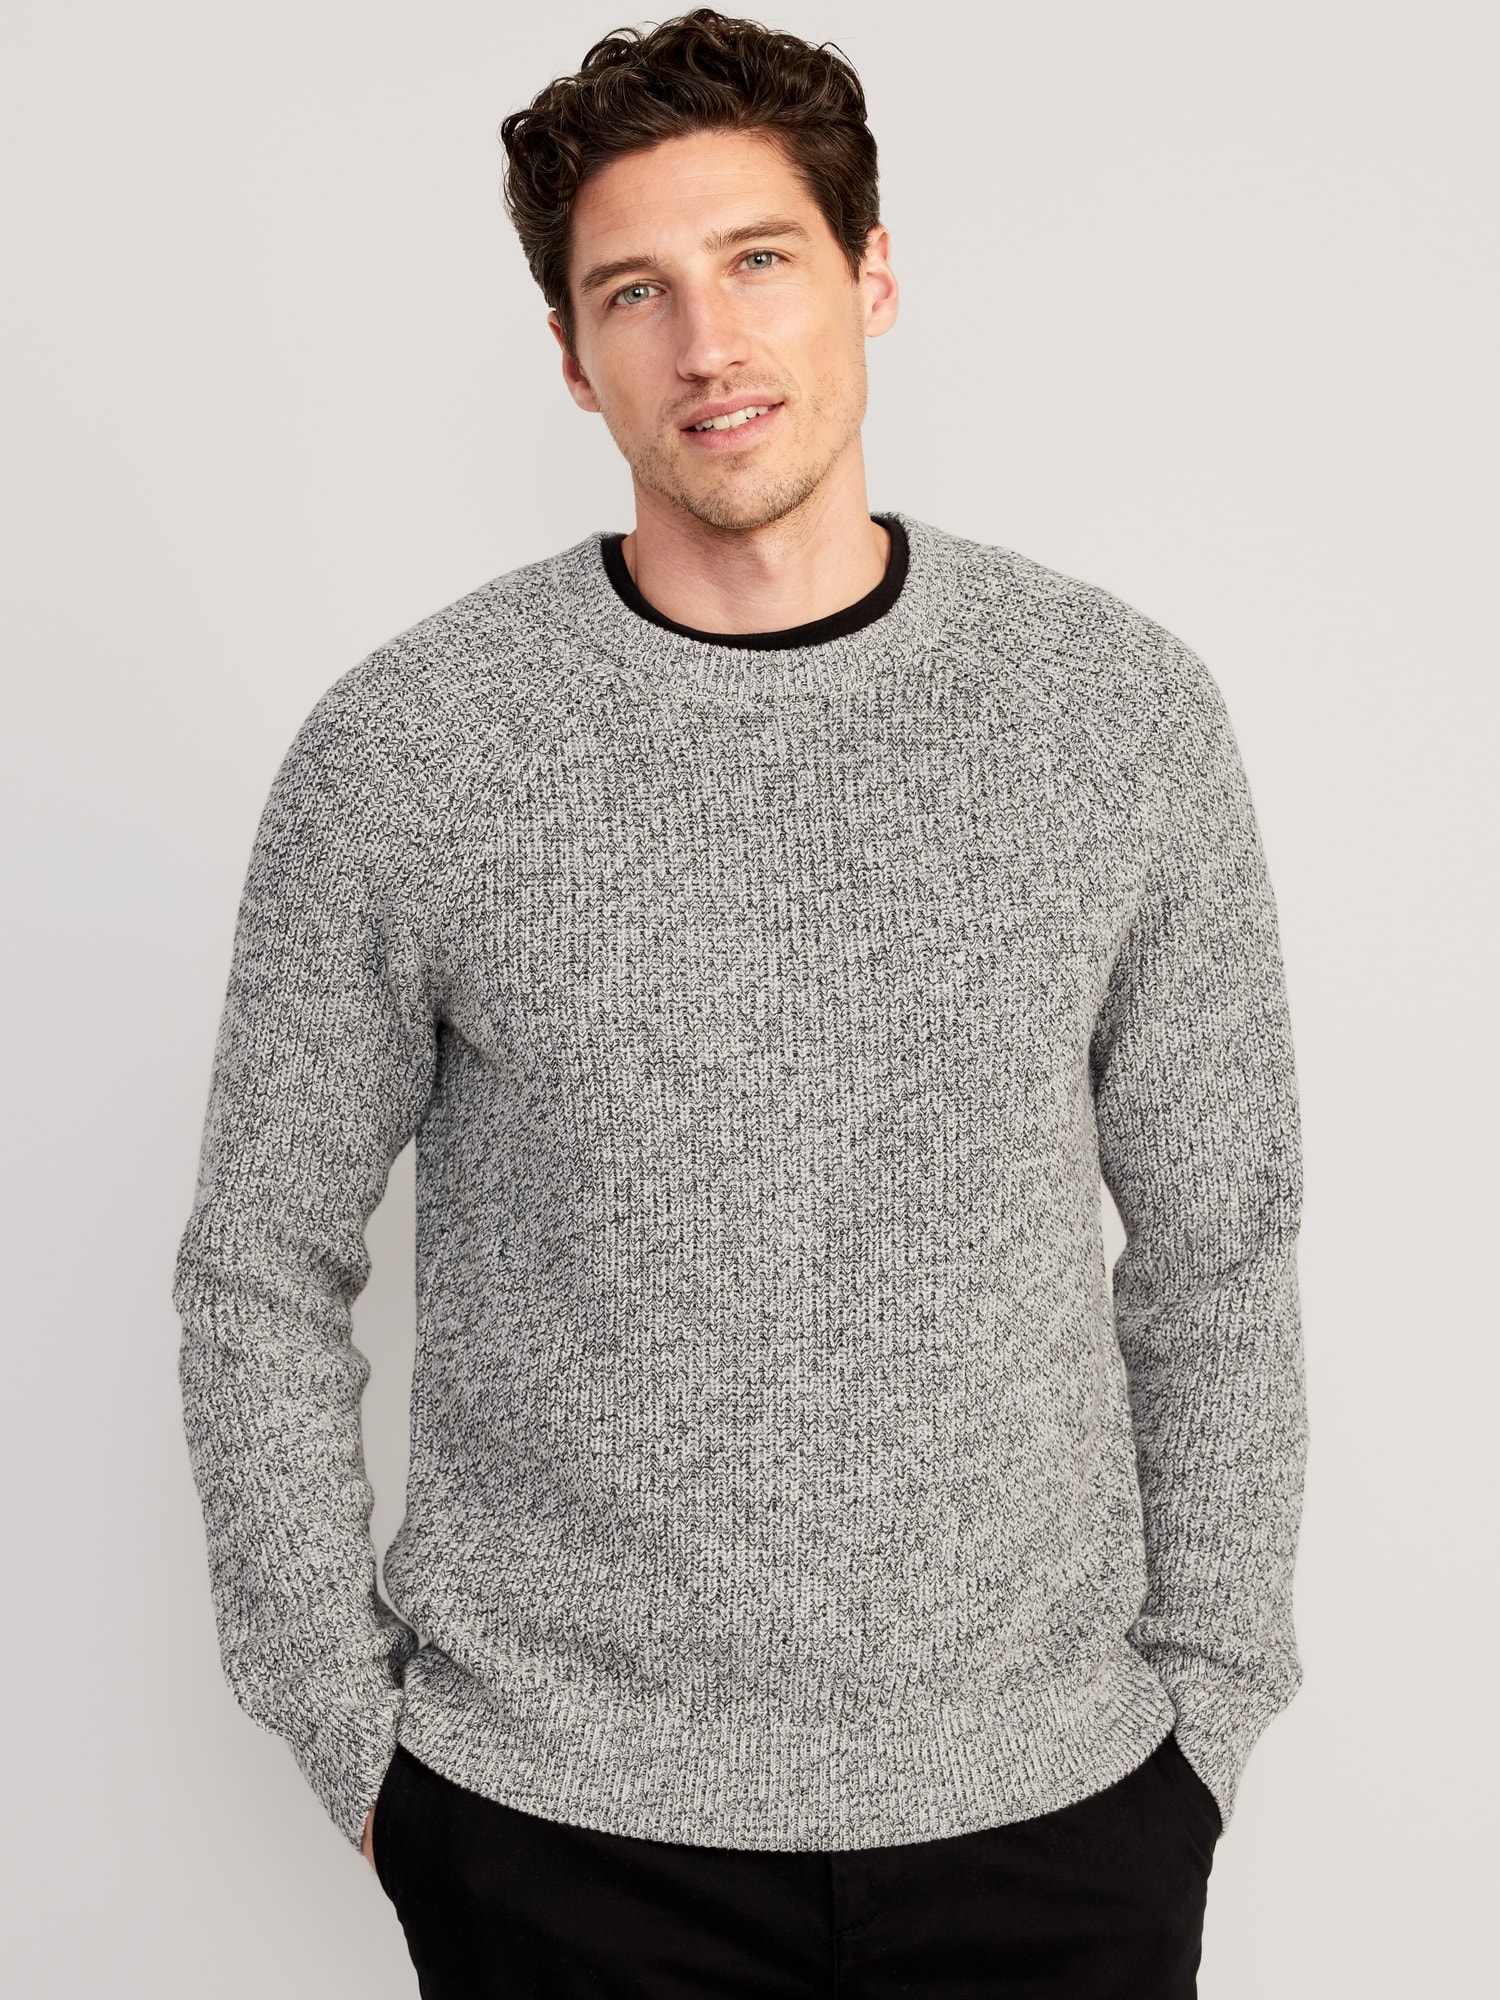 Men's Crew Neck Sweaters & Sweatshirts